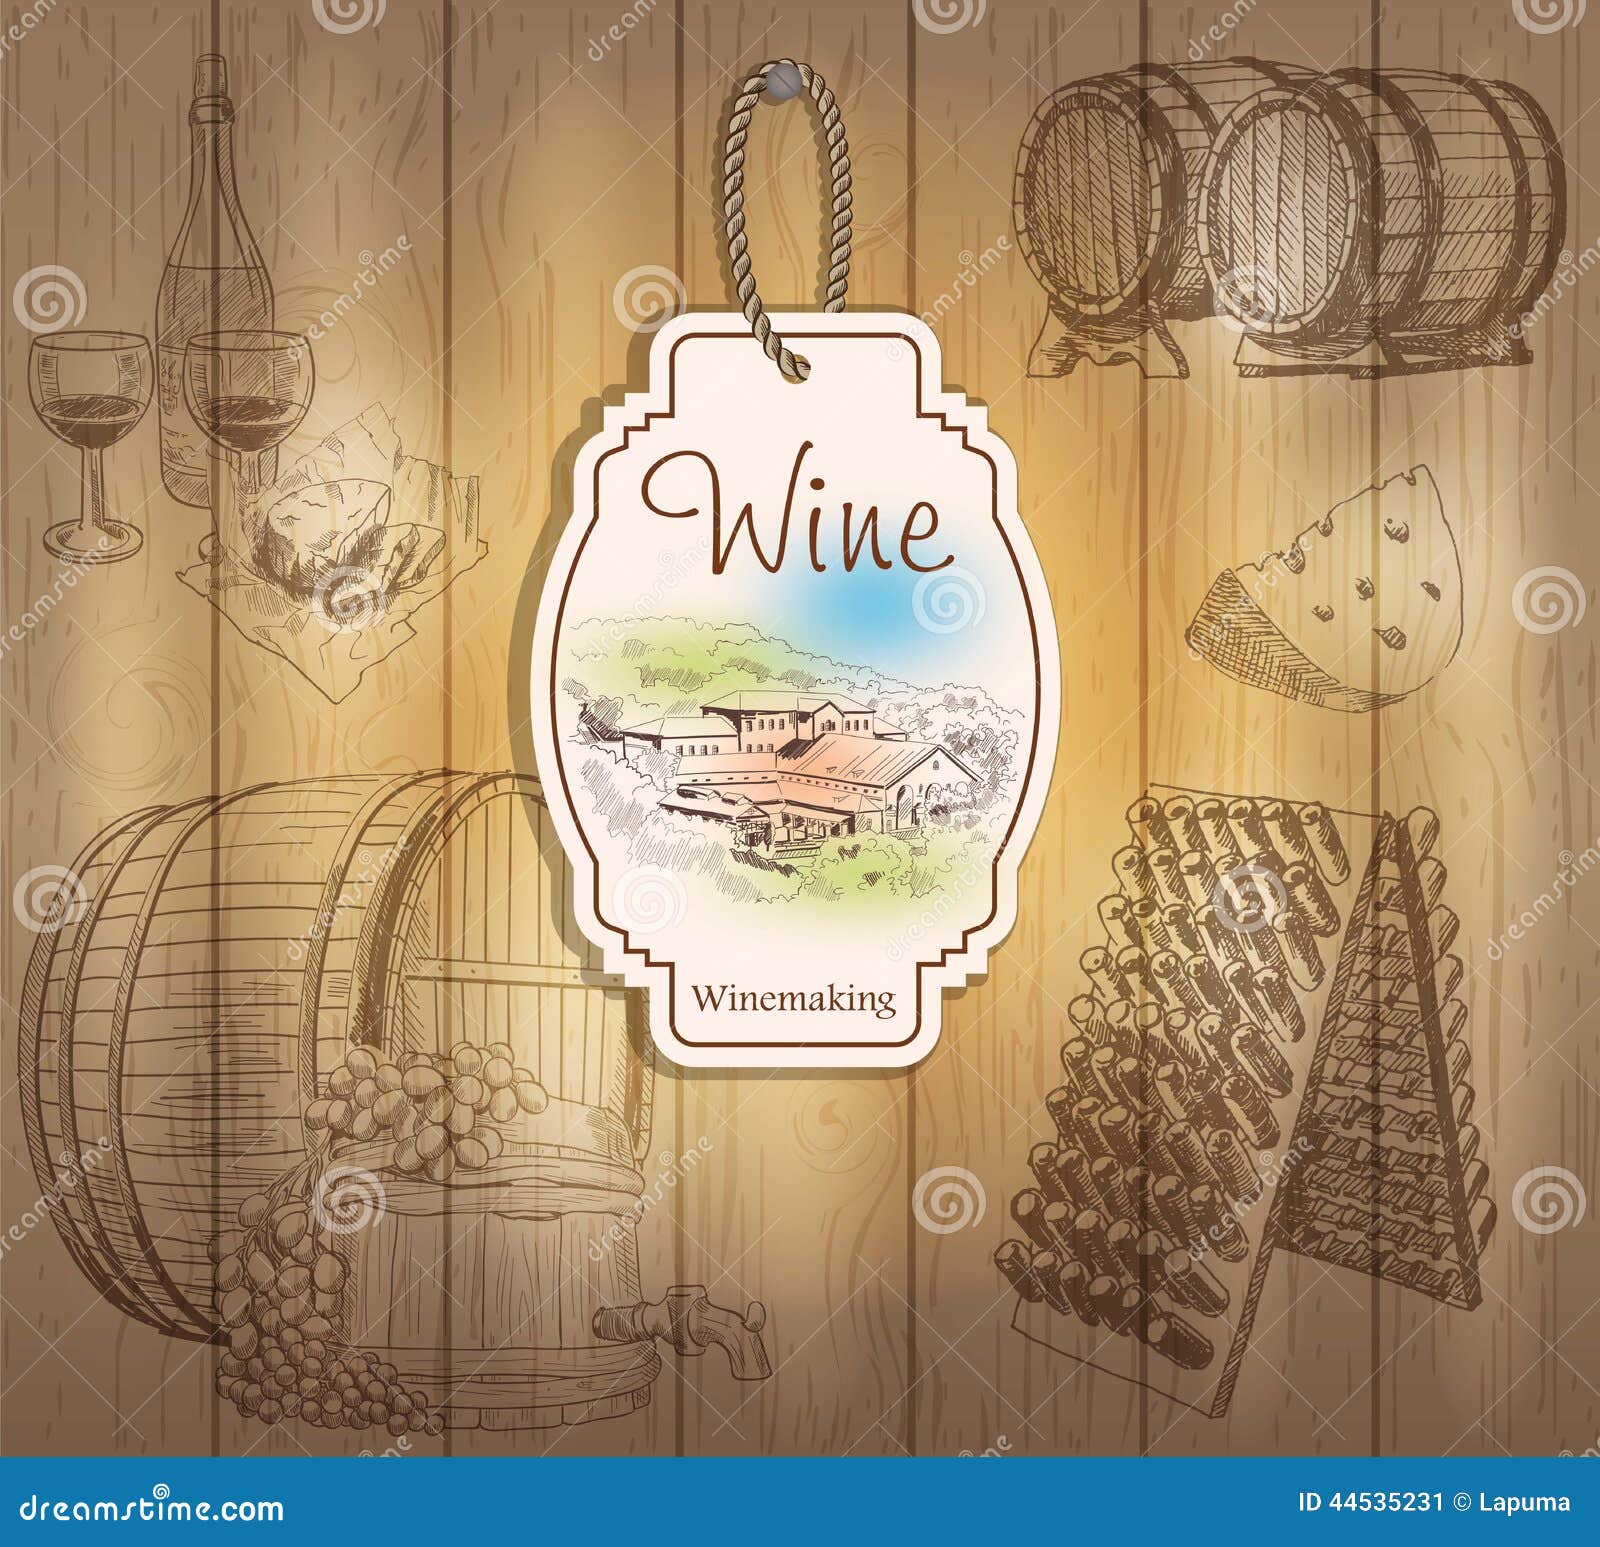 clip art wine labels - photo #33